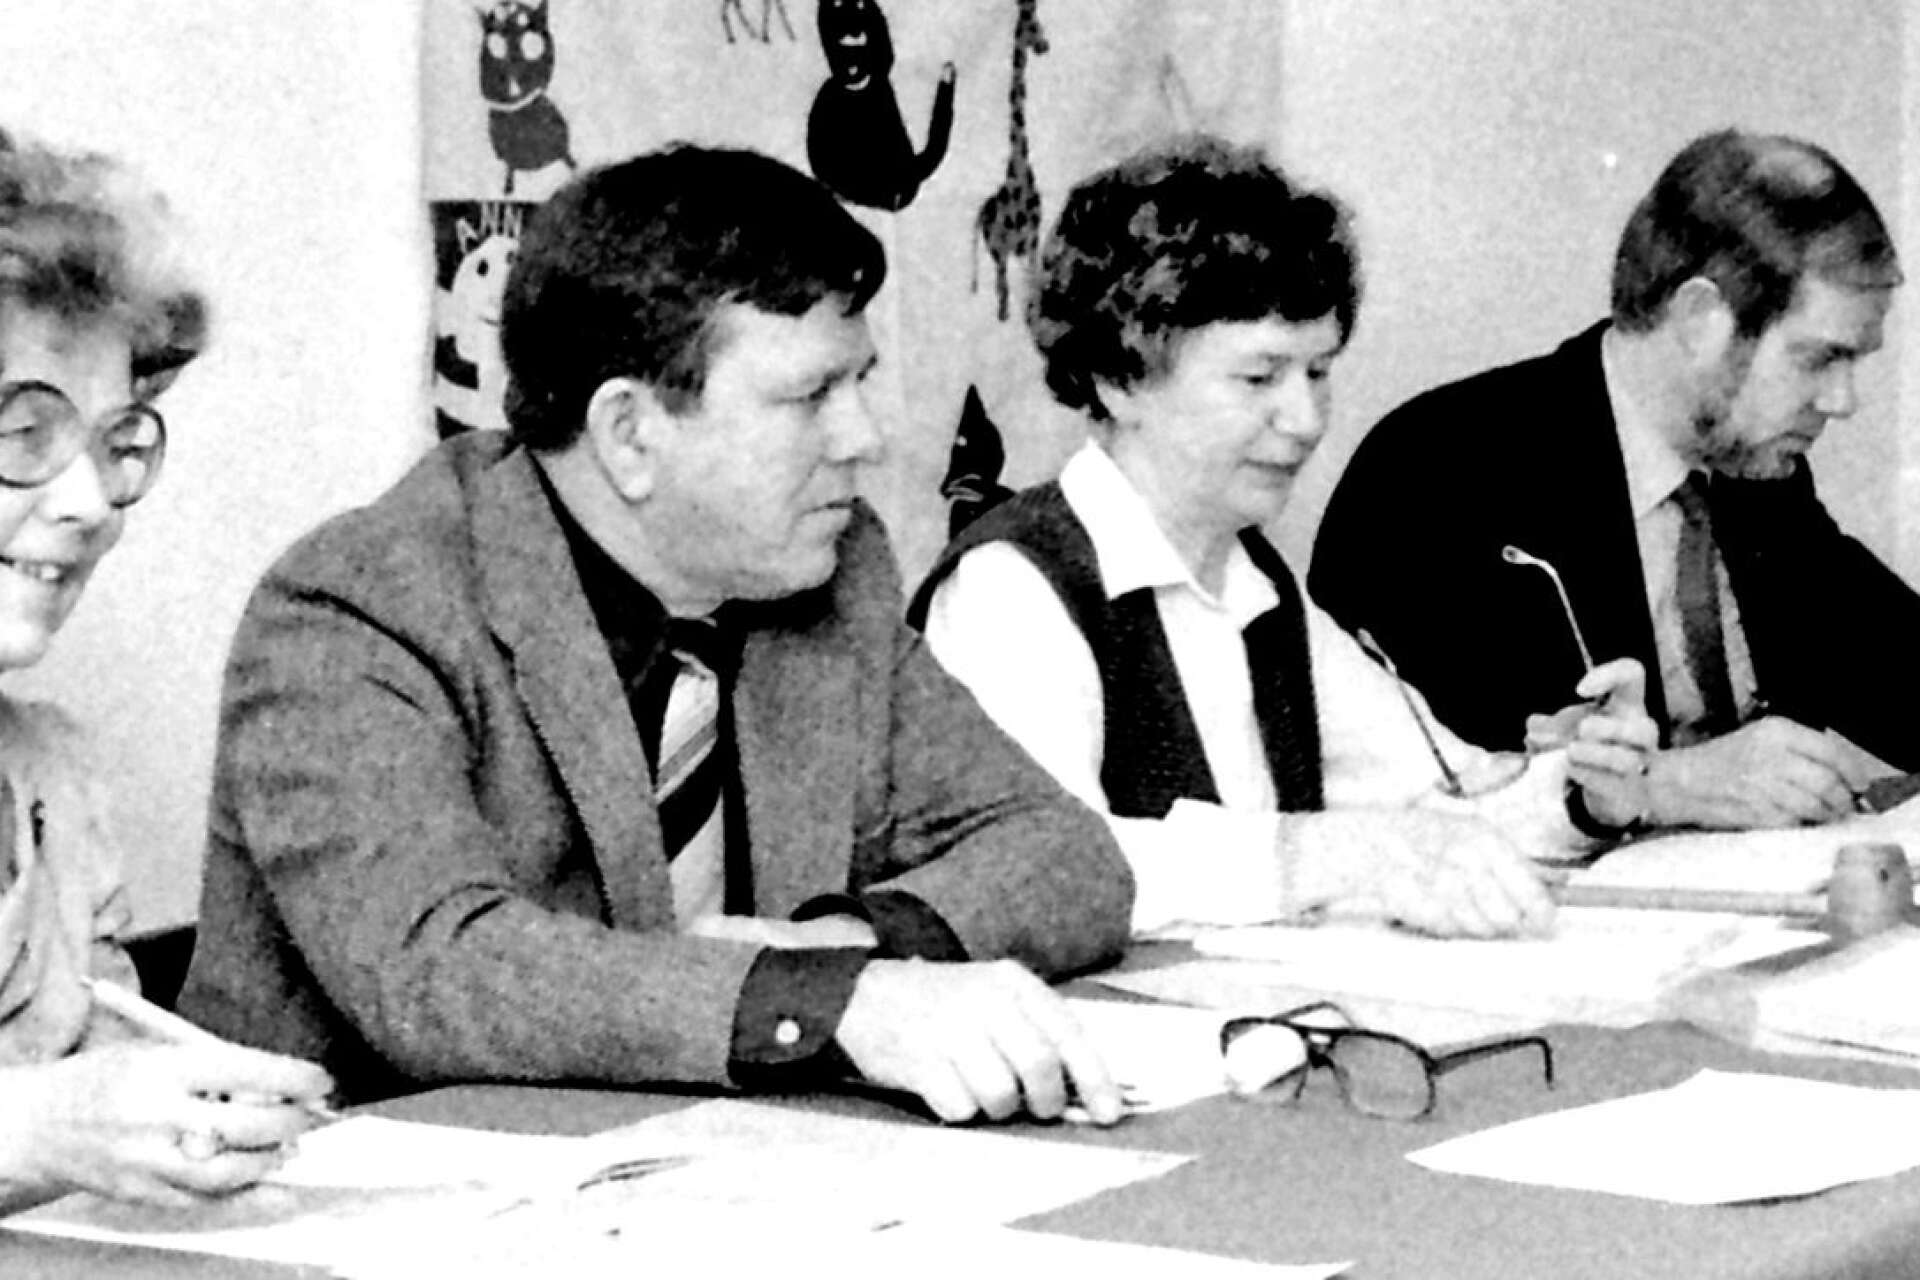 Innan Ingrid Einevik 1983 blev kommunalråd var hon ordförande i kommunfullmäktige. På bilden med presidiet ses från vänster Ulla Moberg (m), Ove Frimodig (s), ordföranden Ingrid Einevik (c) och kanslichef Håkan Malmqvist.